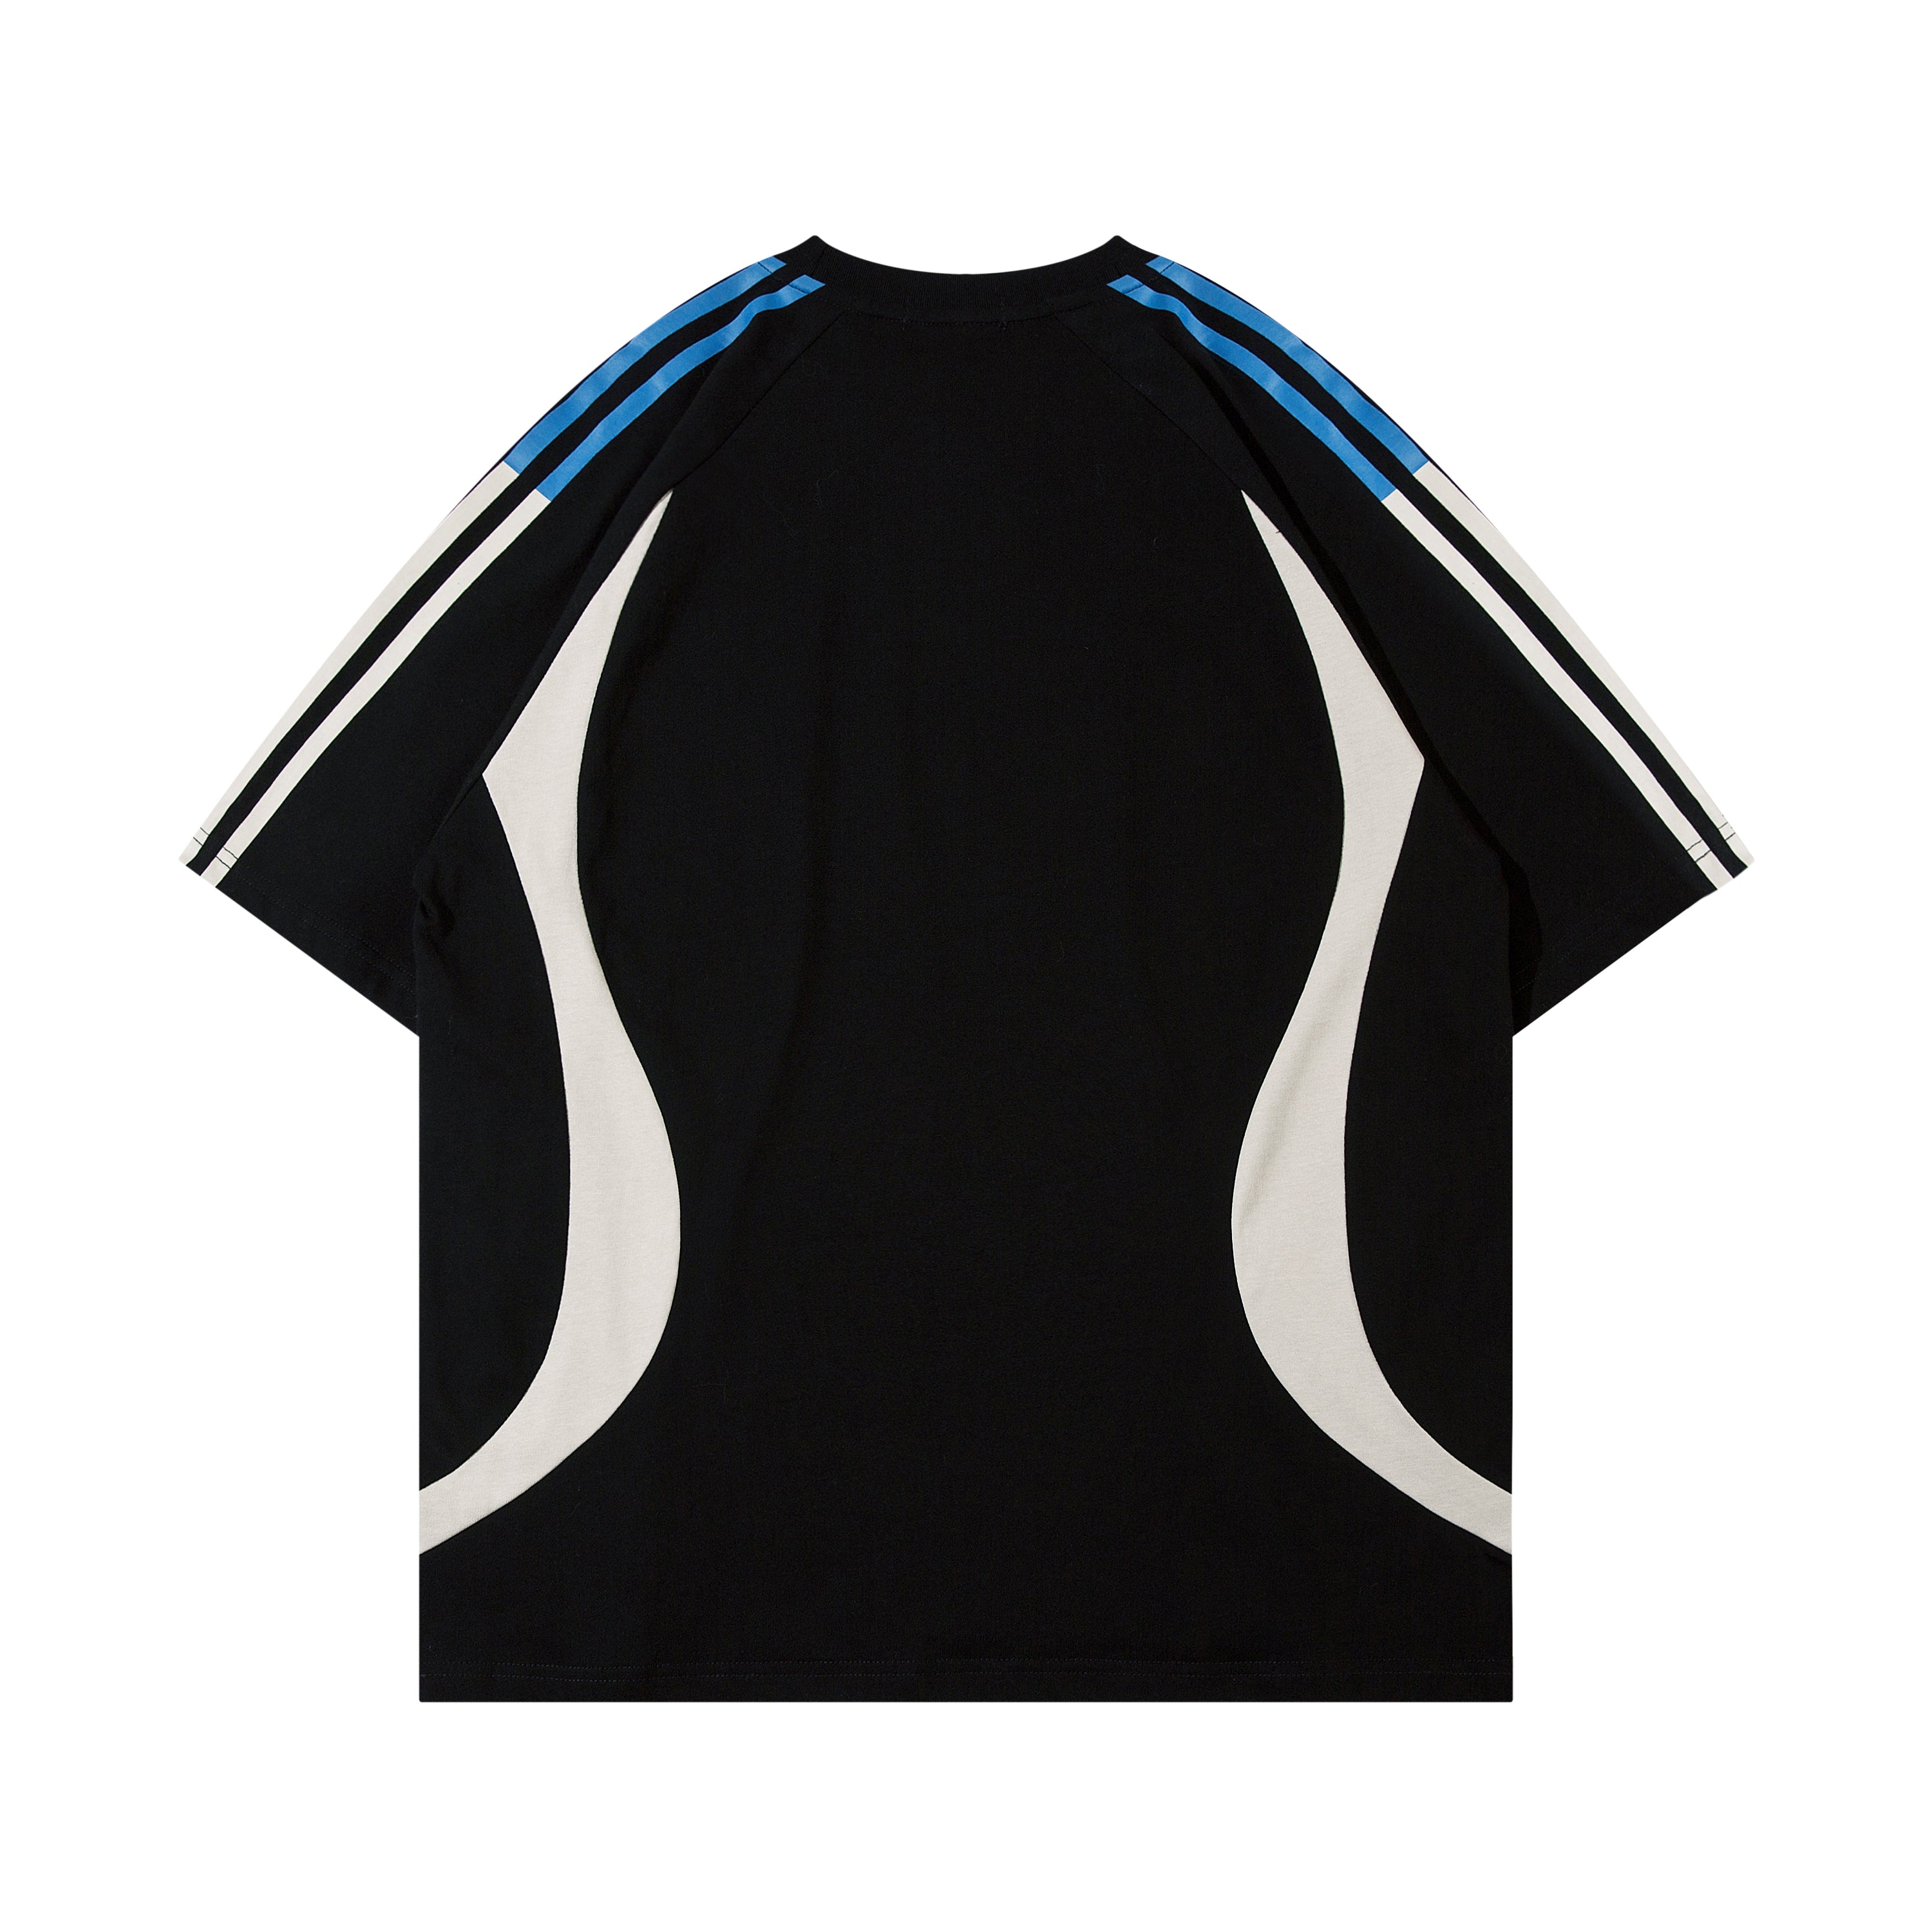 "Skyline Draft" Racing T Shirt - Santo 